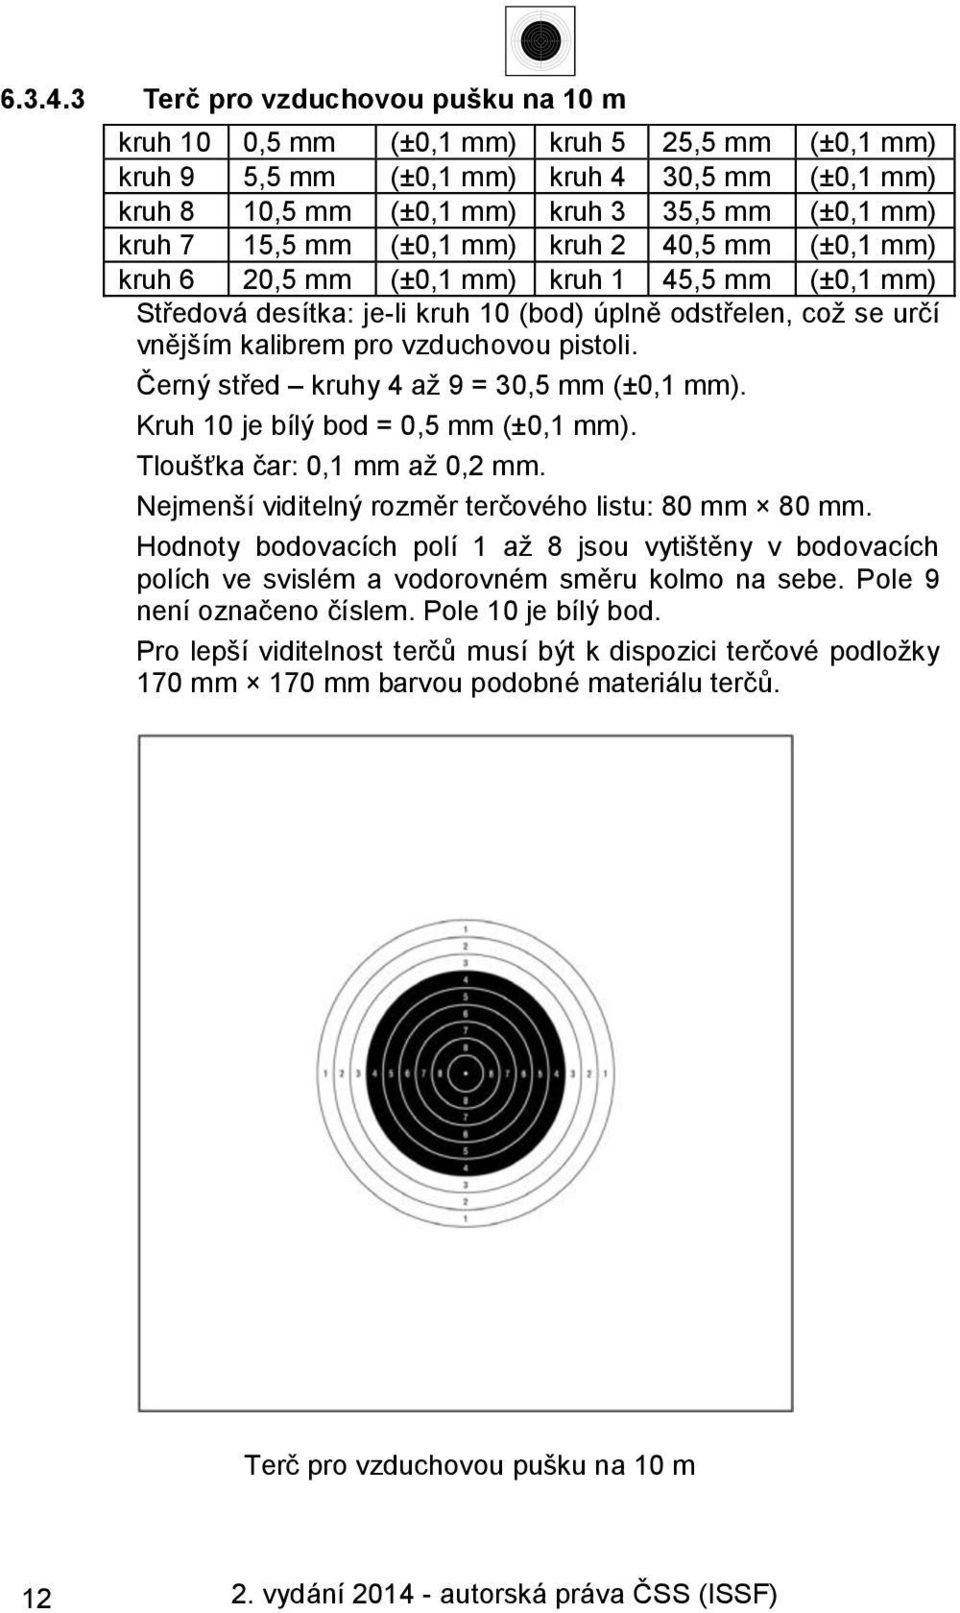 (±0,1 mm) kruh 2 40,5 mm (±0,1 mm) kruh 6 20,5 mm (±0,1 mm) kruh 1 45,5 mm (±0,1 mm) Středová desítka: je-li kruh 10 (bod) úplně odstřelen, což se určí vnějším kalibrem pro vzduchovou pistoli.